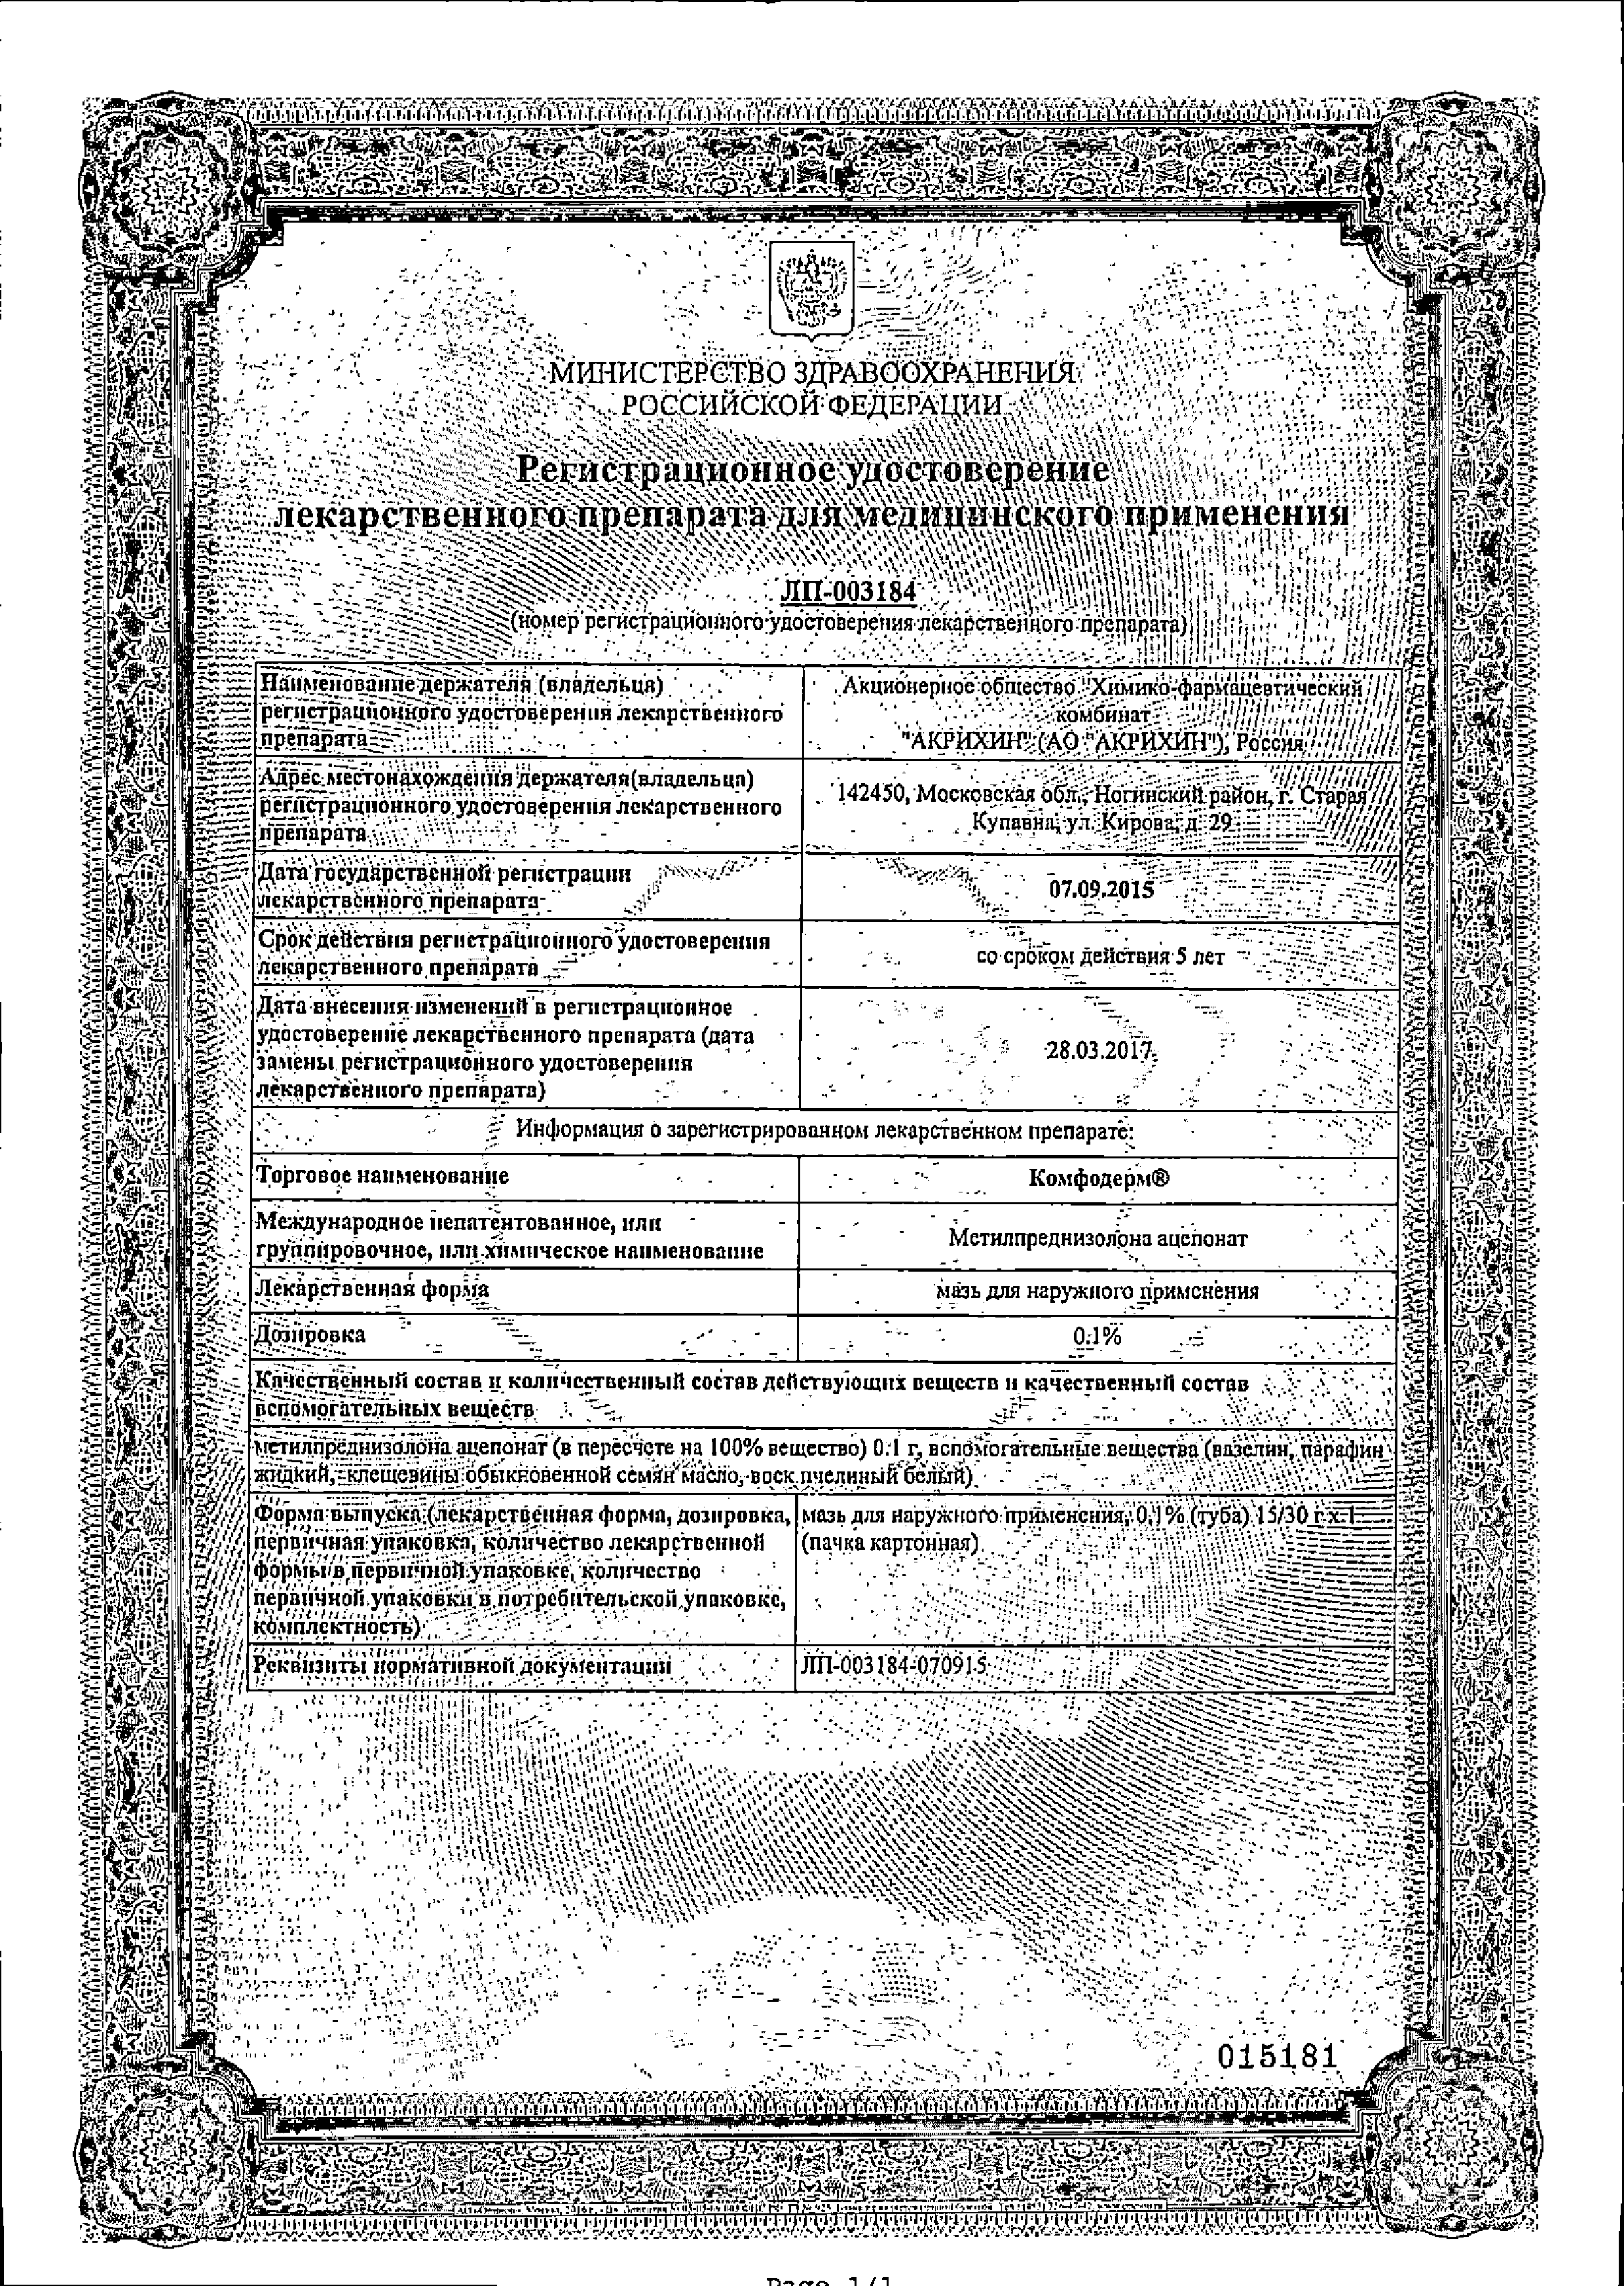 Комфодерм сертификат